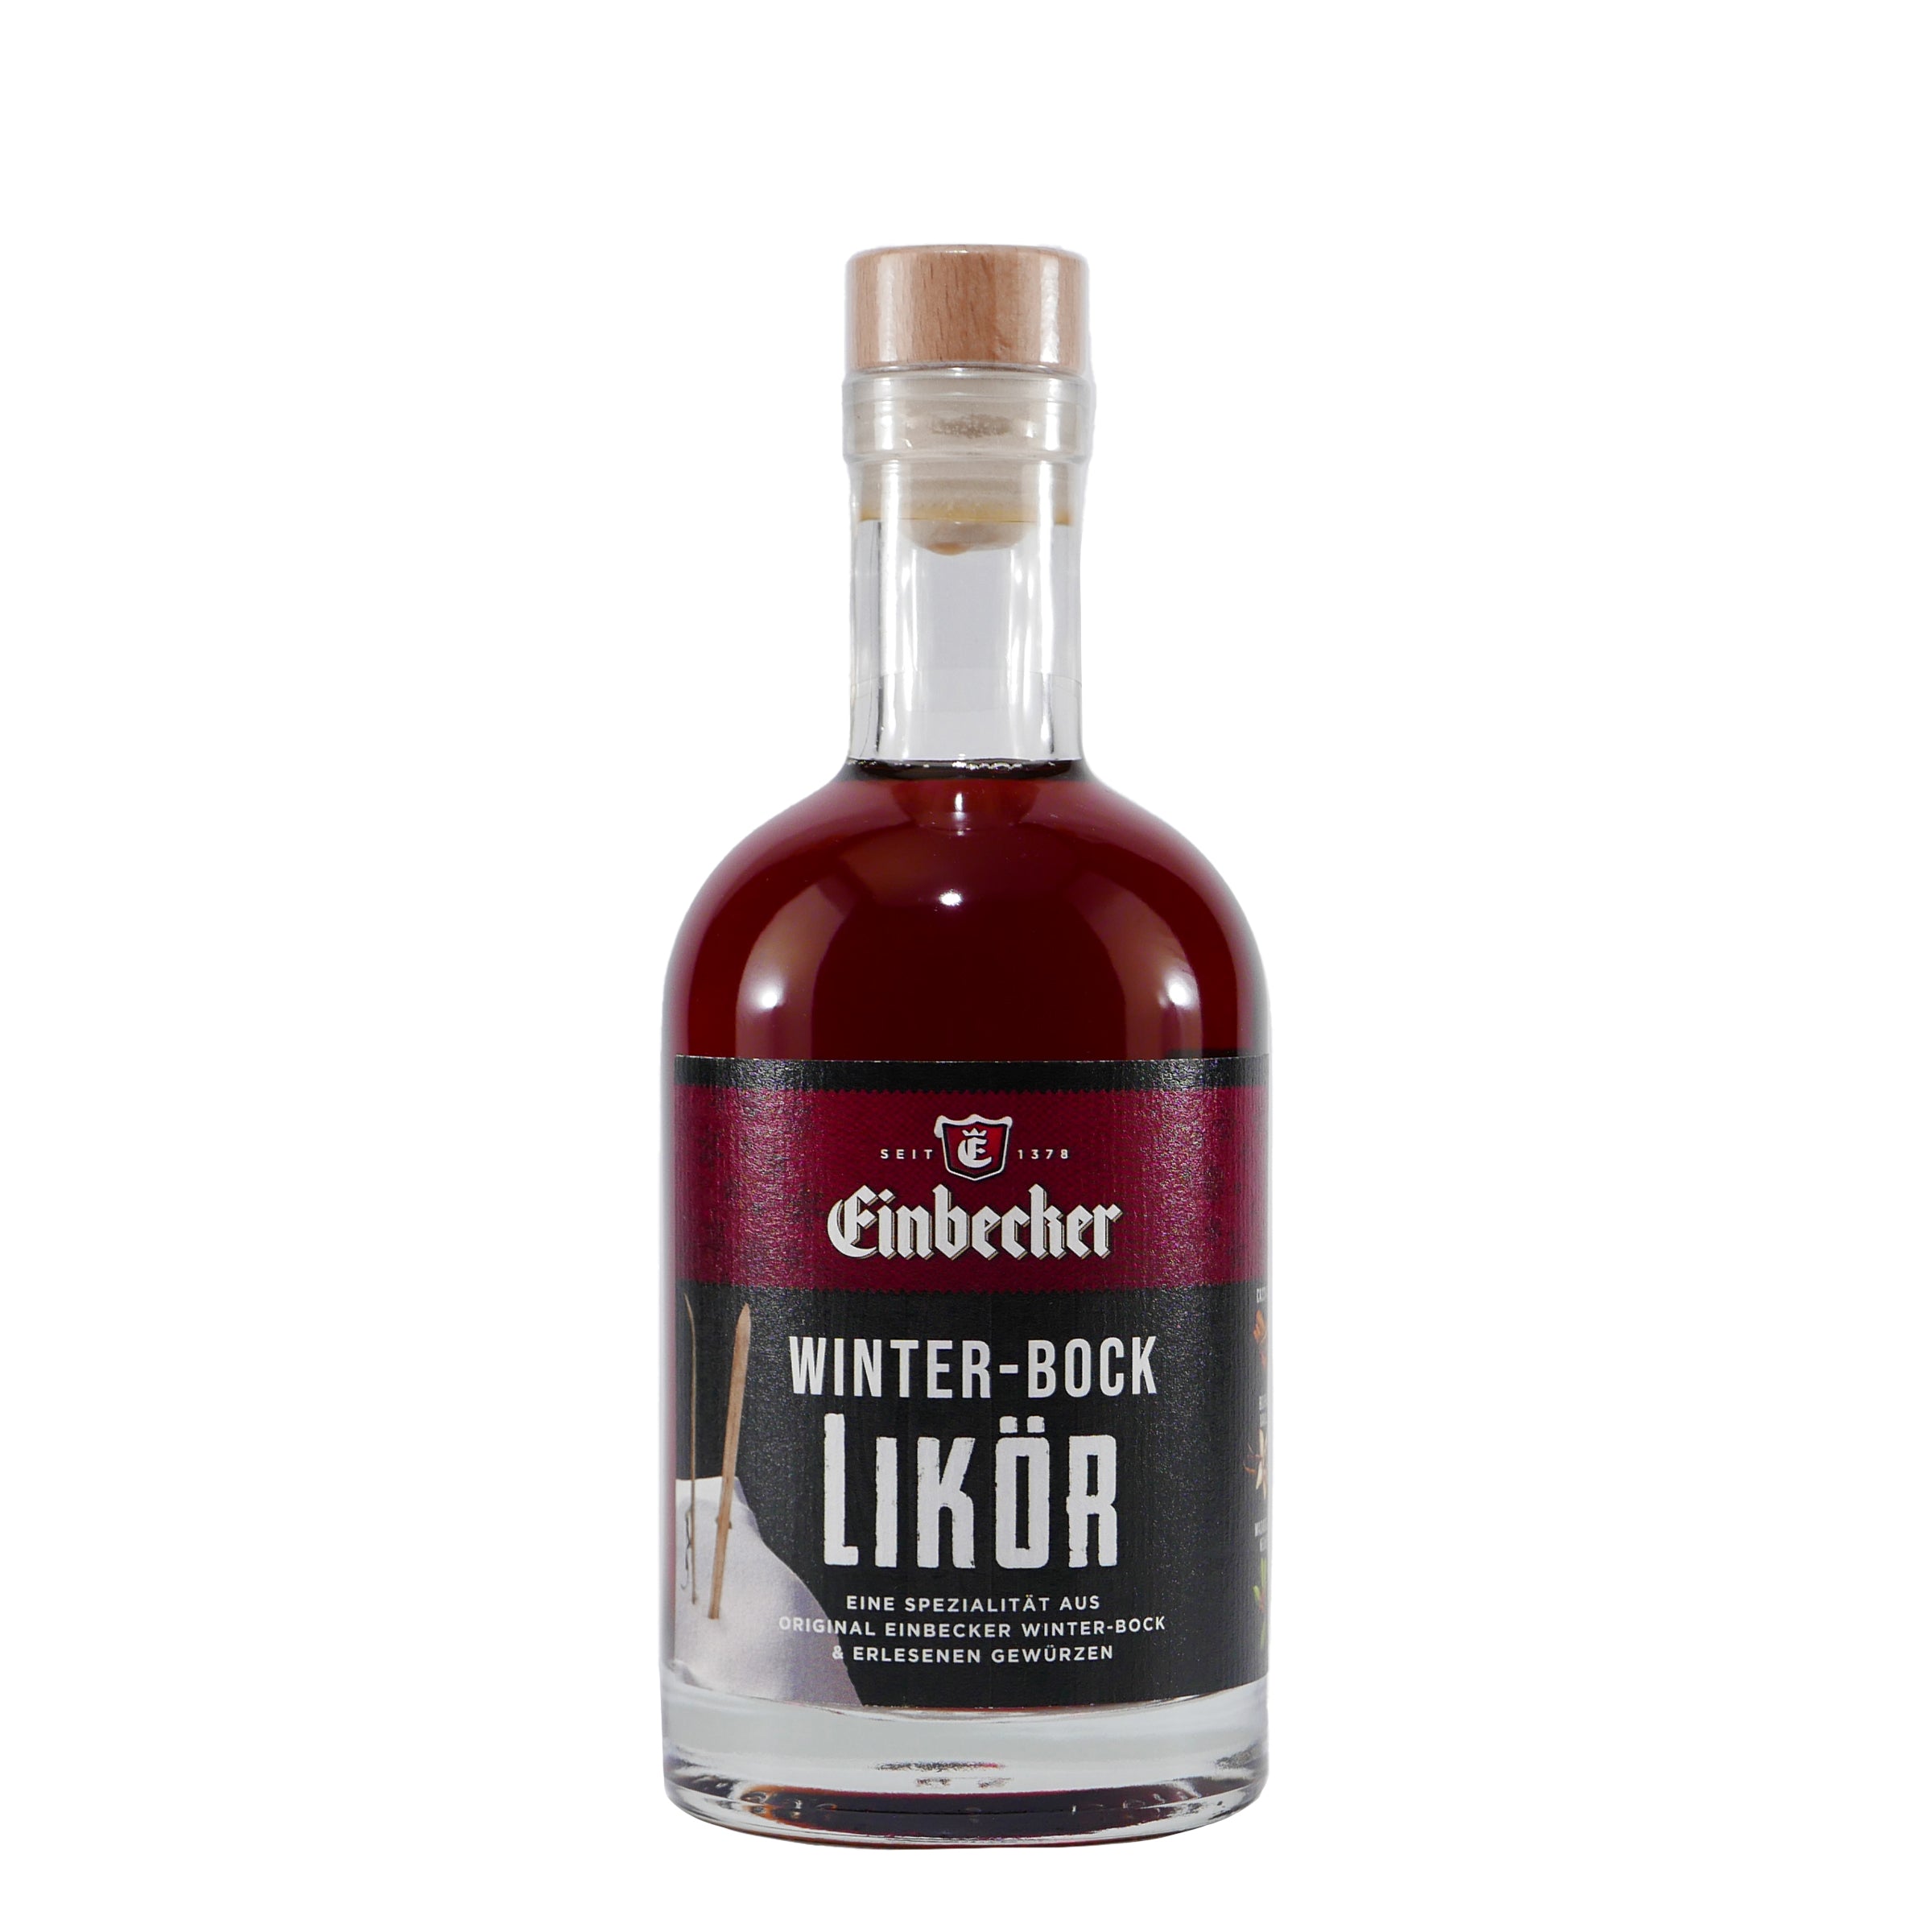 Einbecker Winter-Bock Likör - Winterlicher Genuss mit Bockbier-Aroma